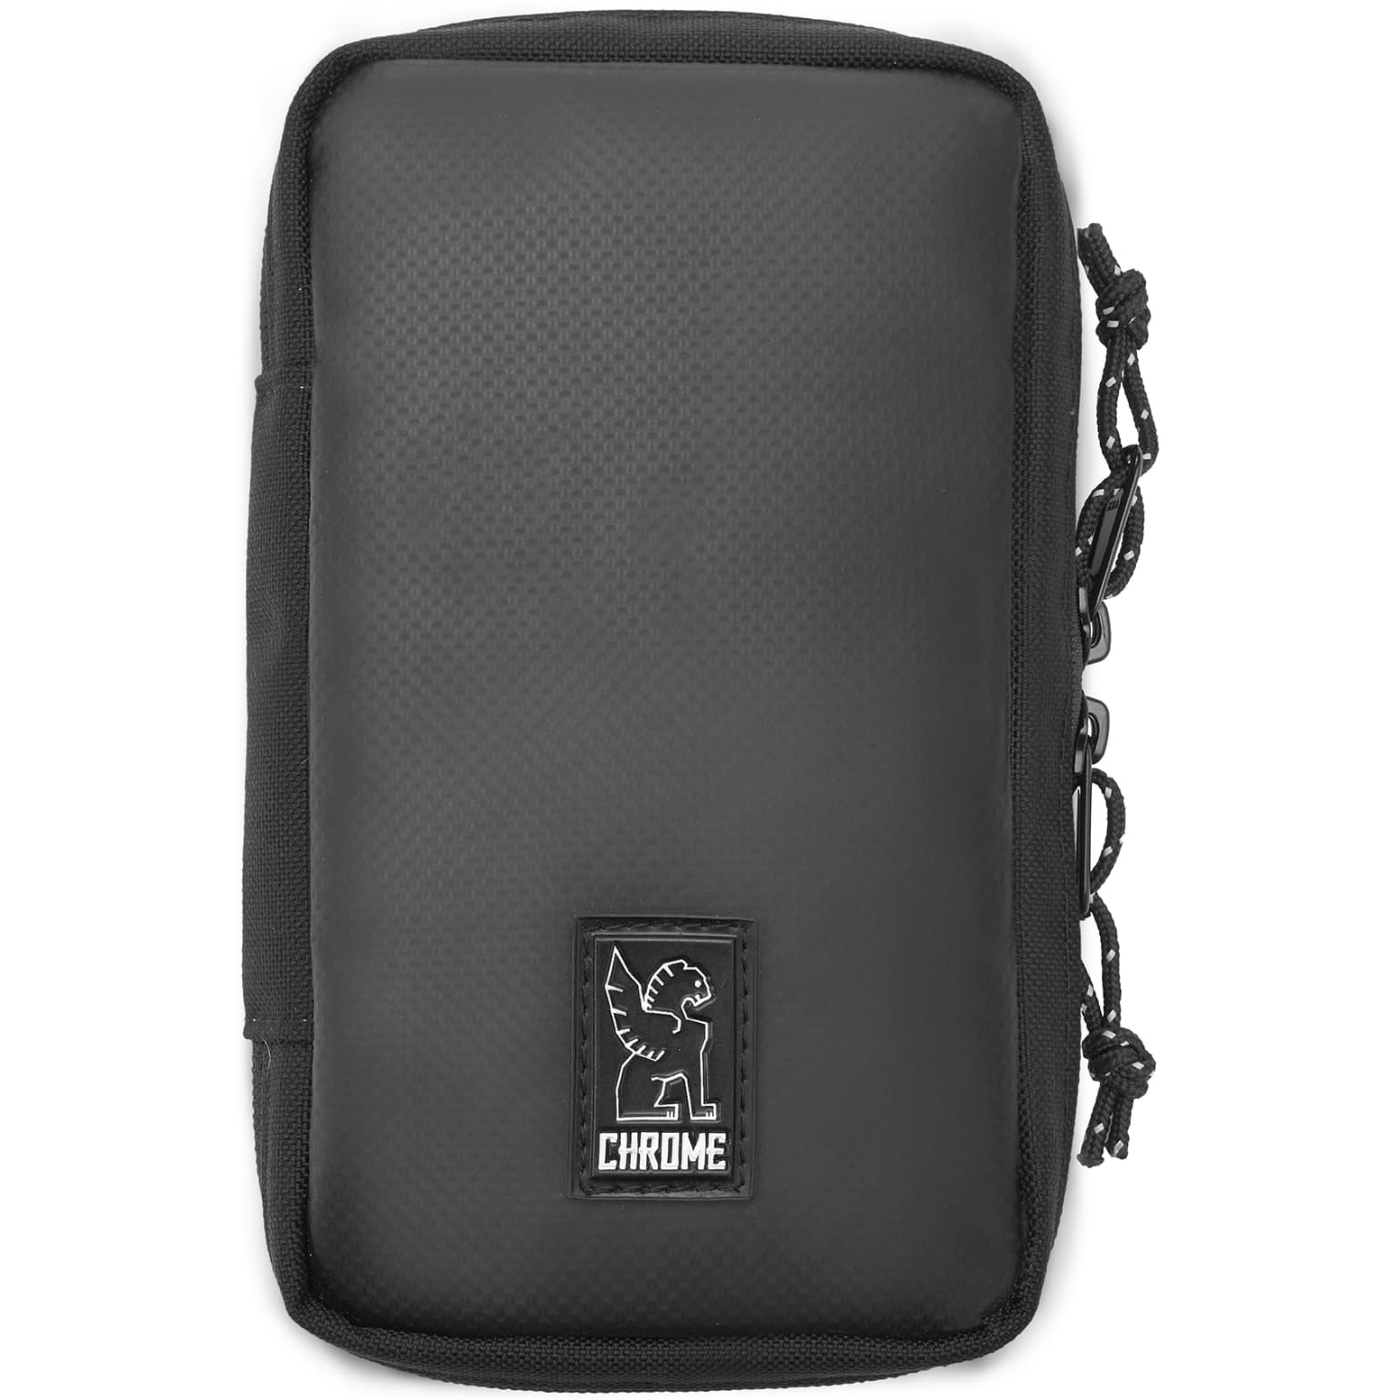 Productfoto van CHROME Tech Accessory Pouch Accessoires Tas - 0.5 L - Zwart